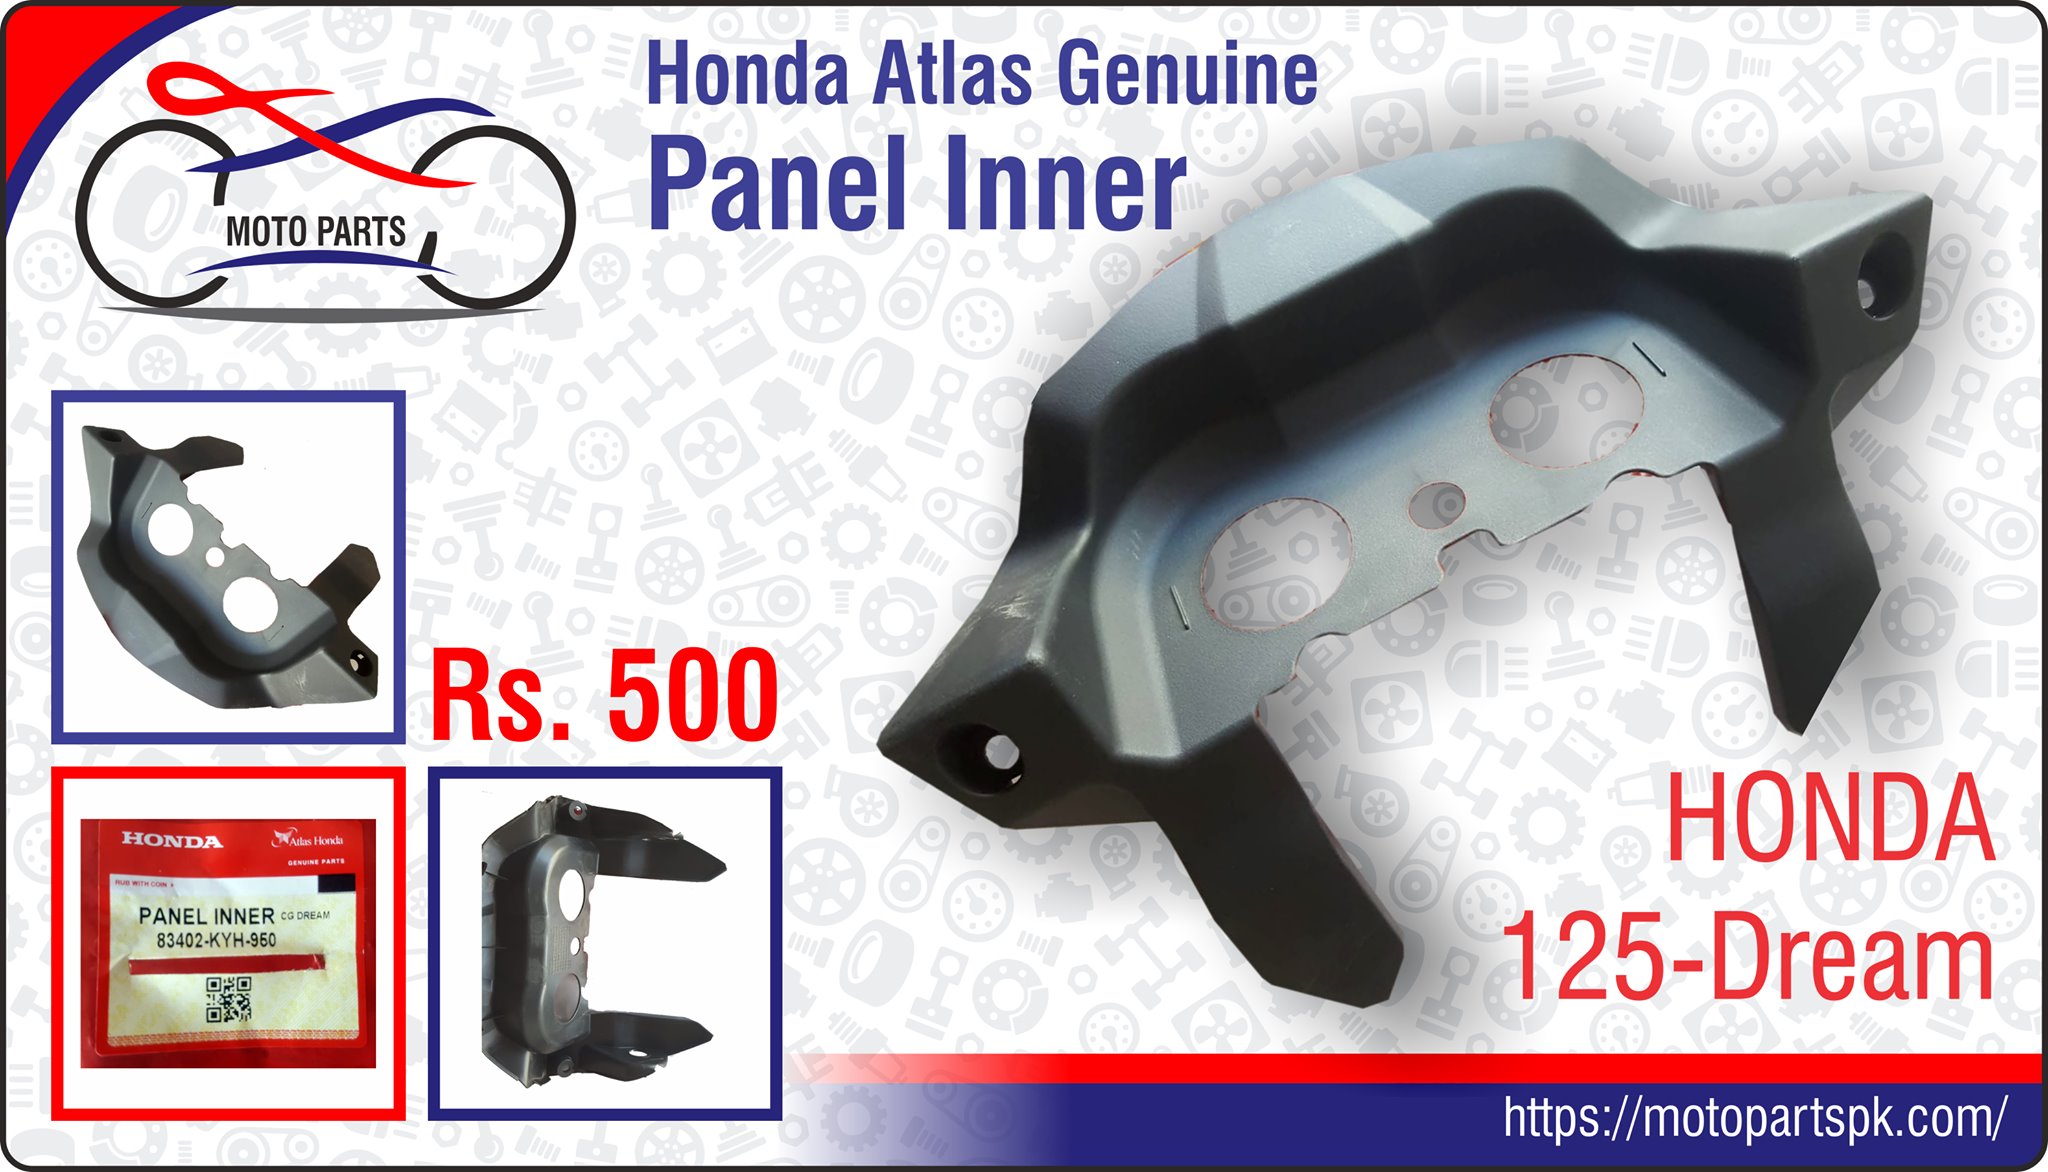 Panel Inner Honda CG-125 Dream